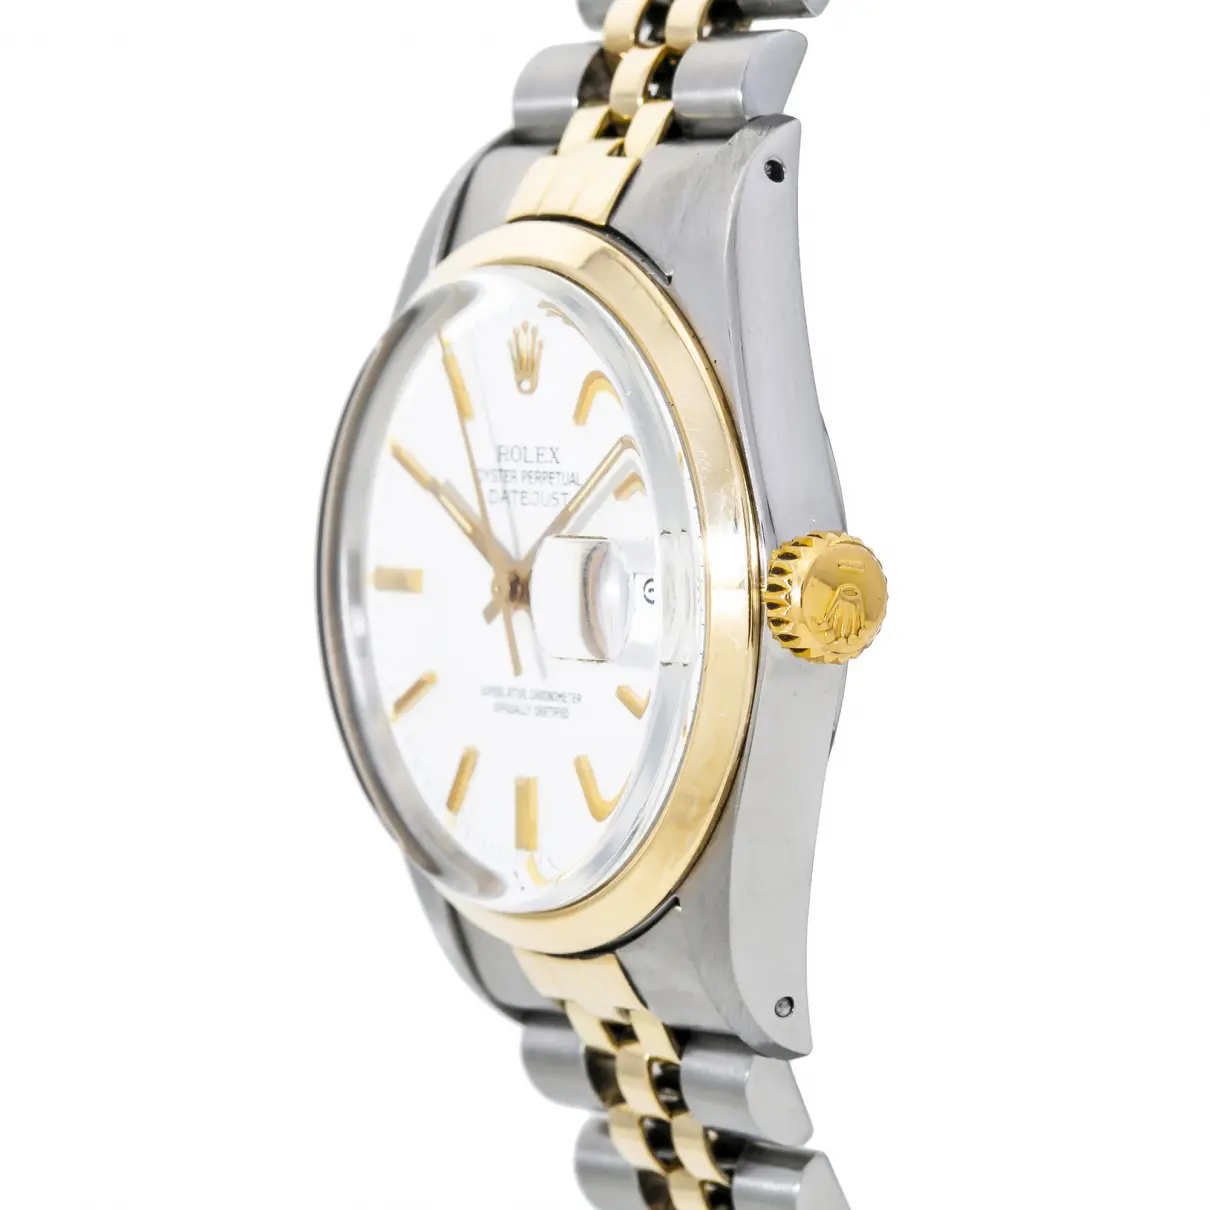 Luxury Rolex Watches Men